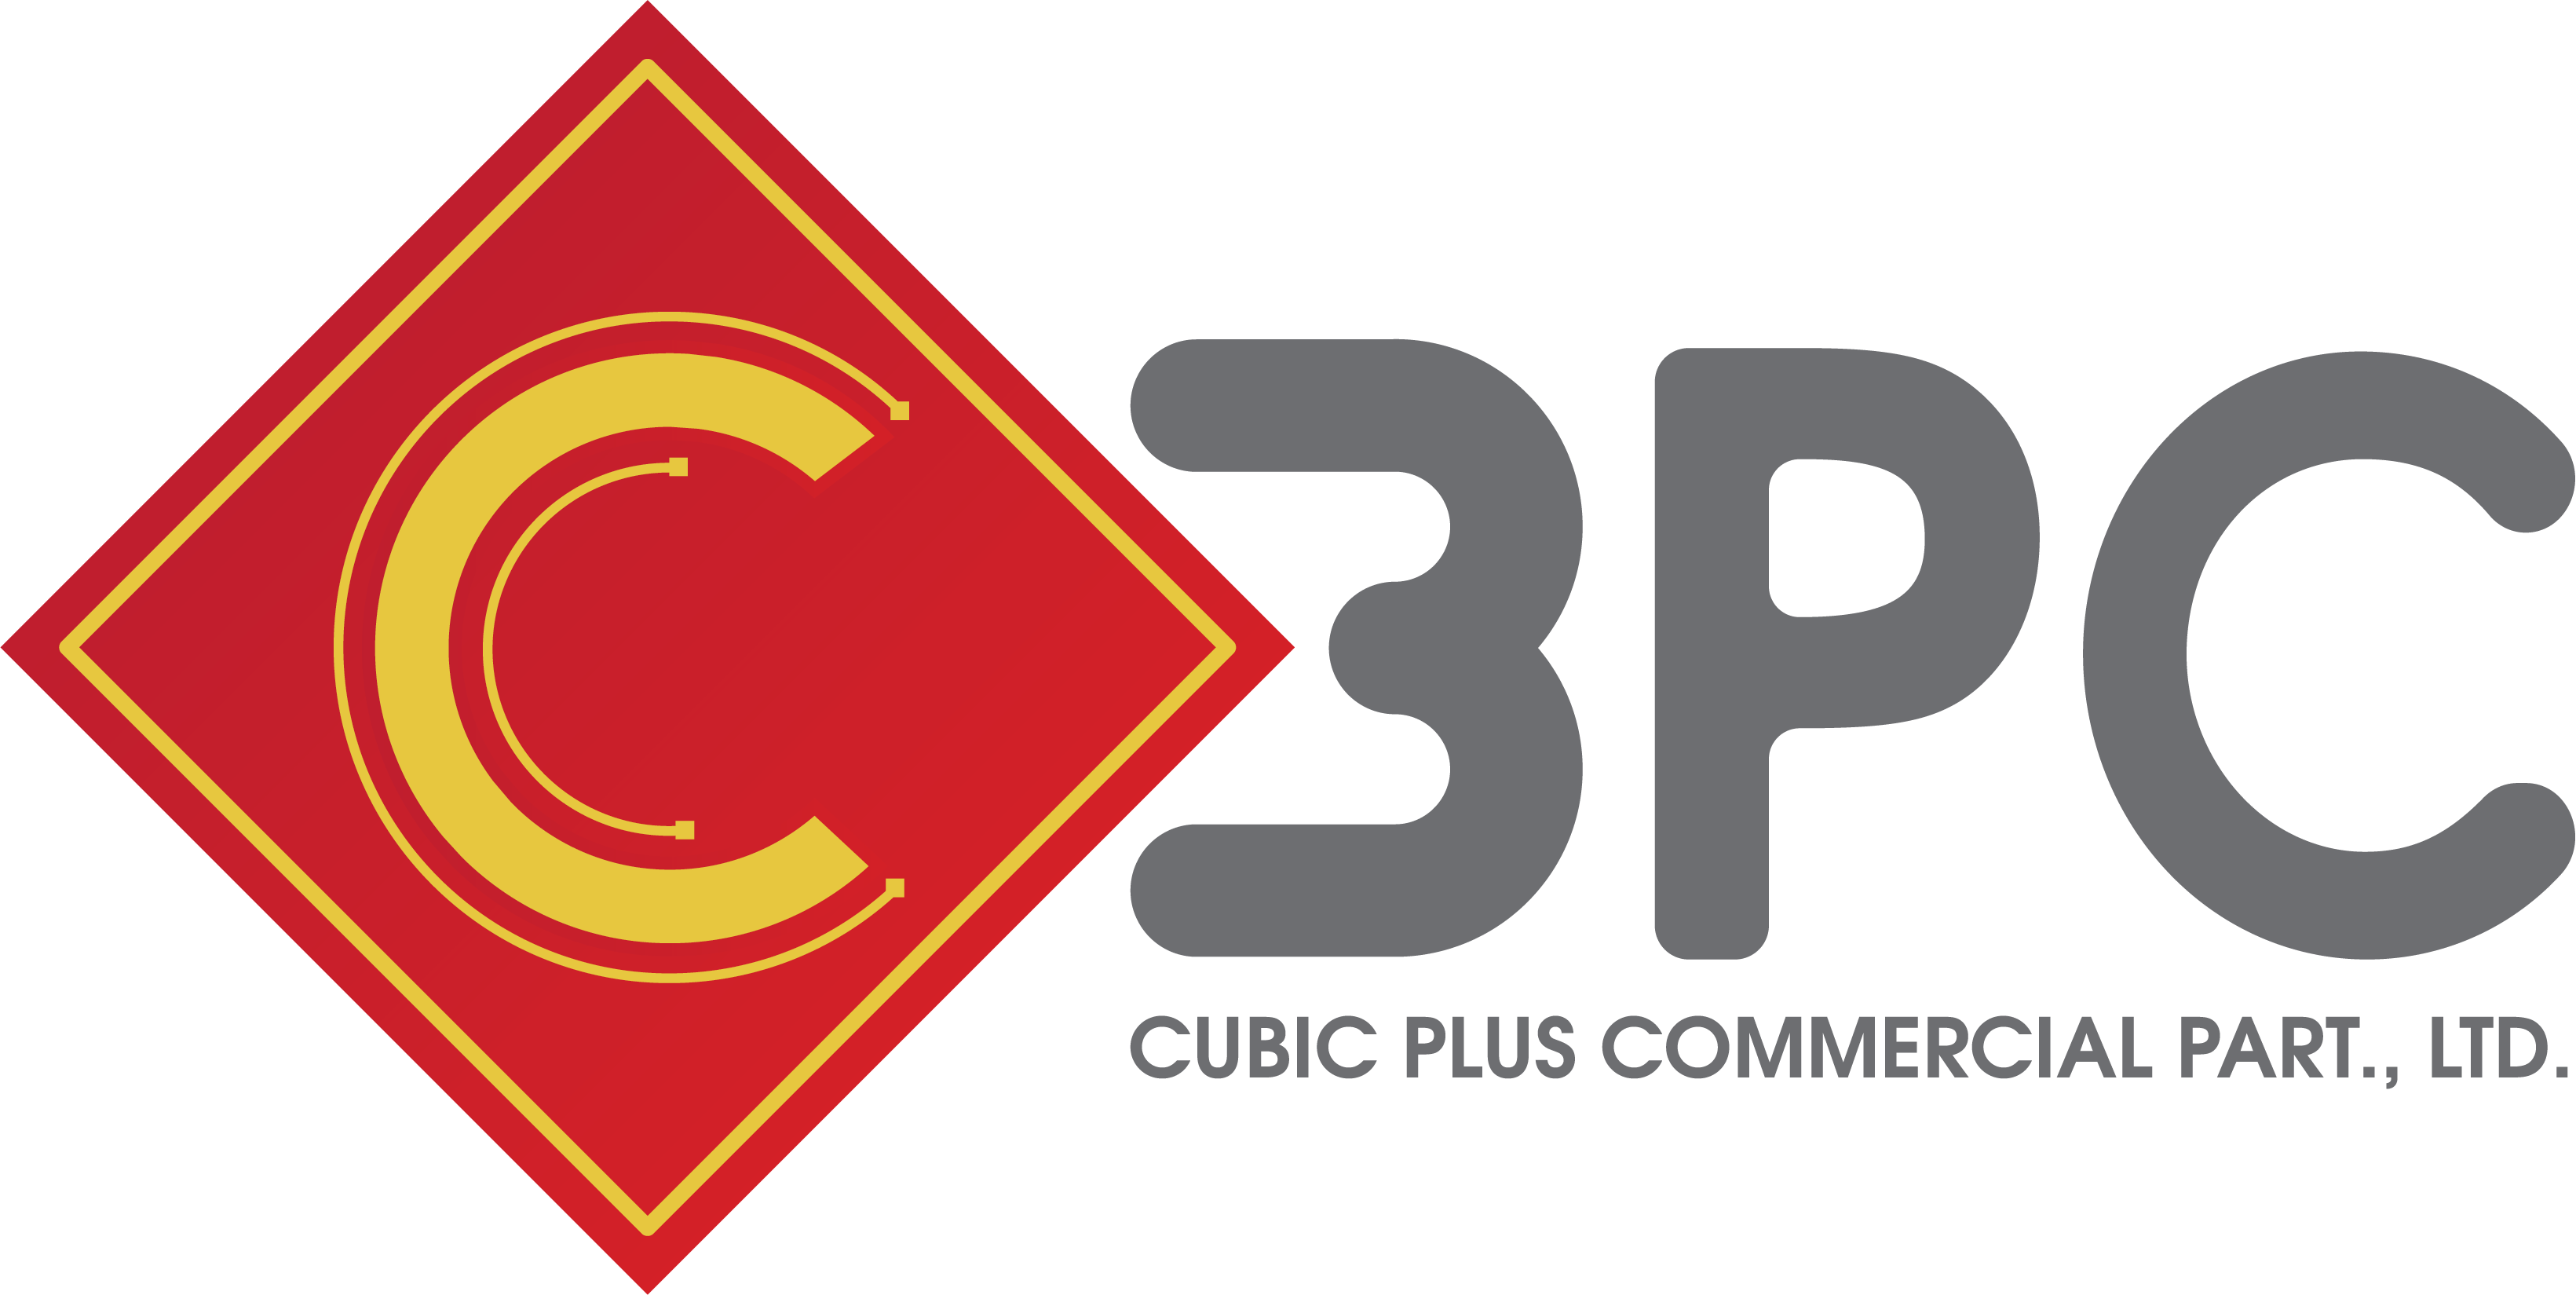 Cubic Plus Commercial Part.,Ltd., ห้างหุ้นส่วนจำกัด คิวบิค พลัส คอมเมอร์เชียล 